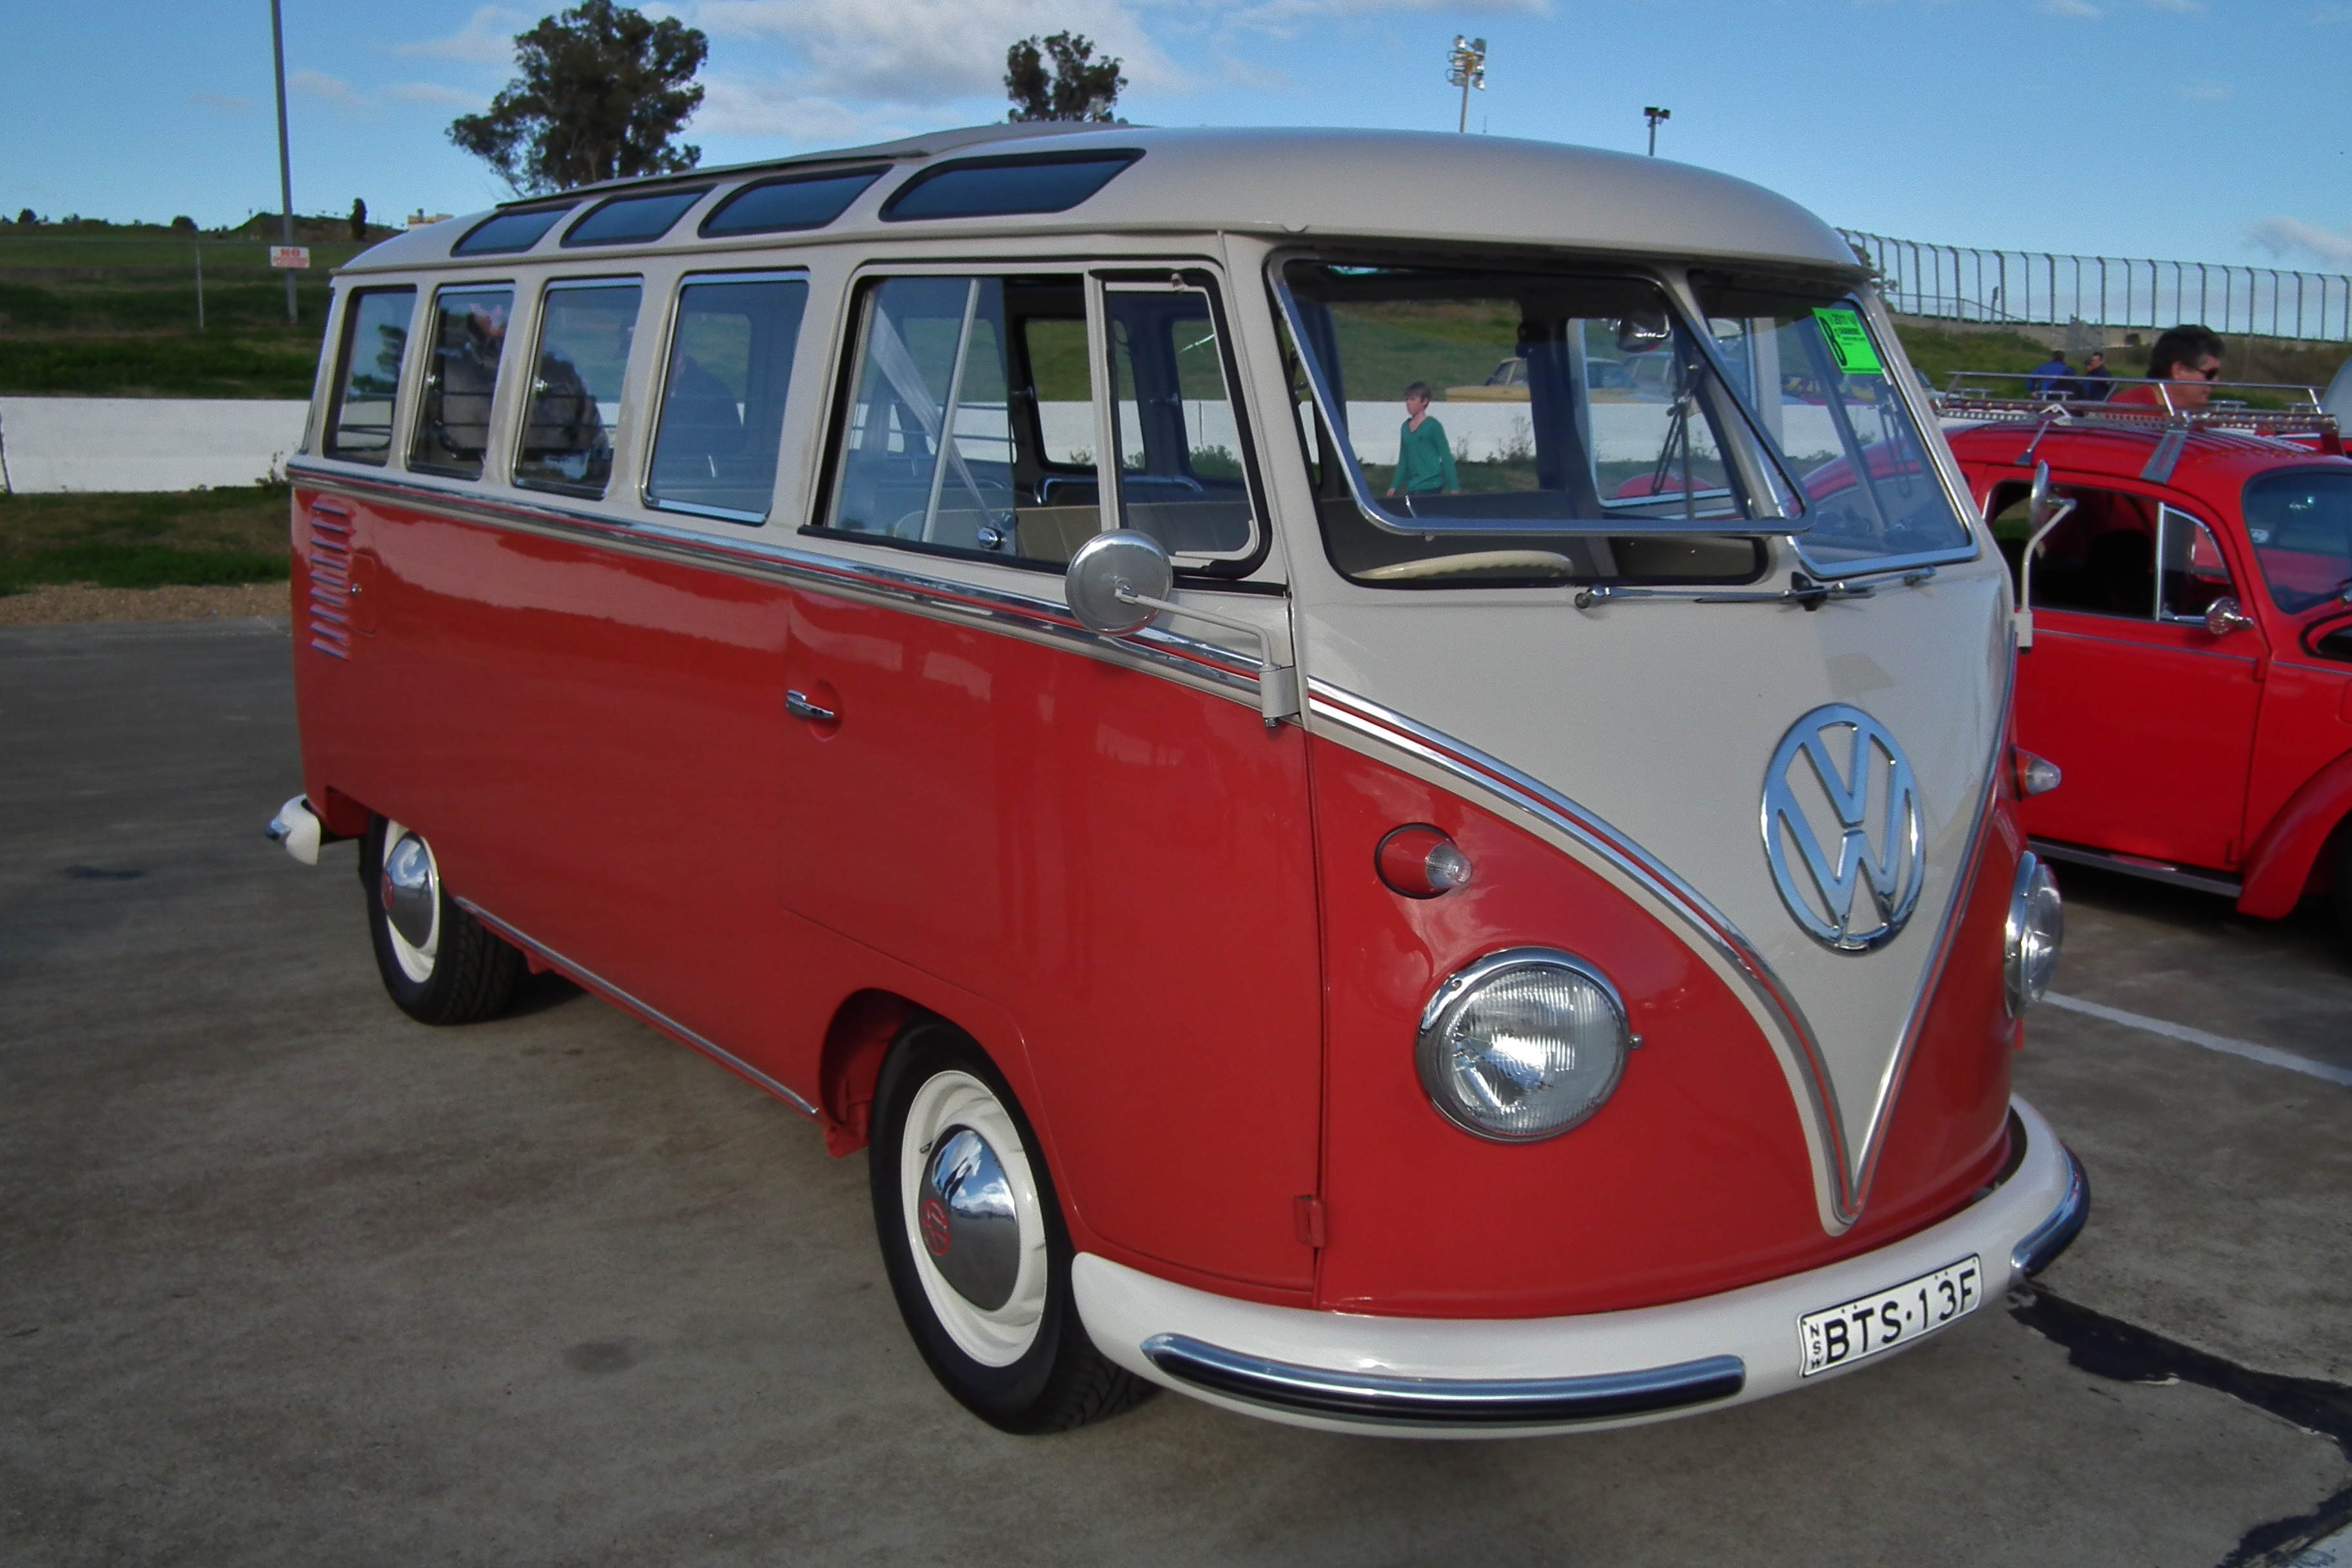 complexiteit Uitbarsten geur File:1960 Volkswagen T1 Transporter Deluxe 21 Window bus (6106006156).jpg -  Wikimedia Commons